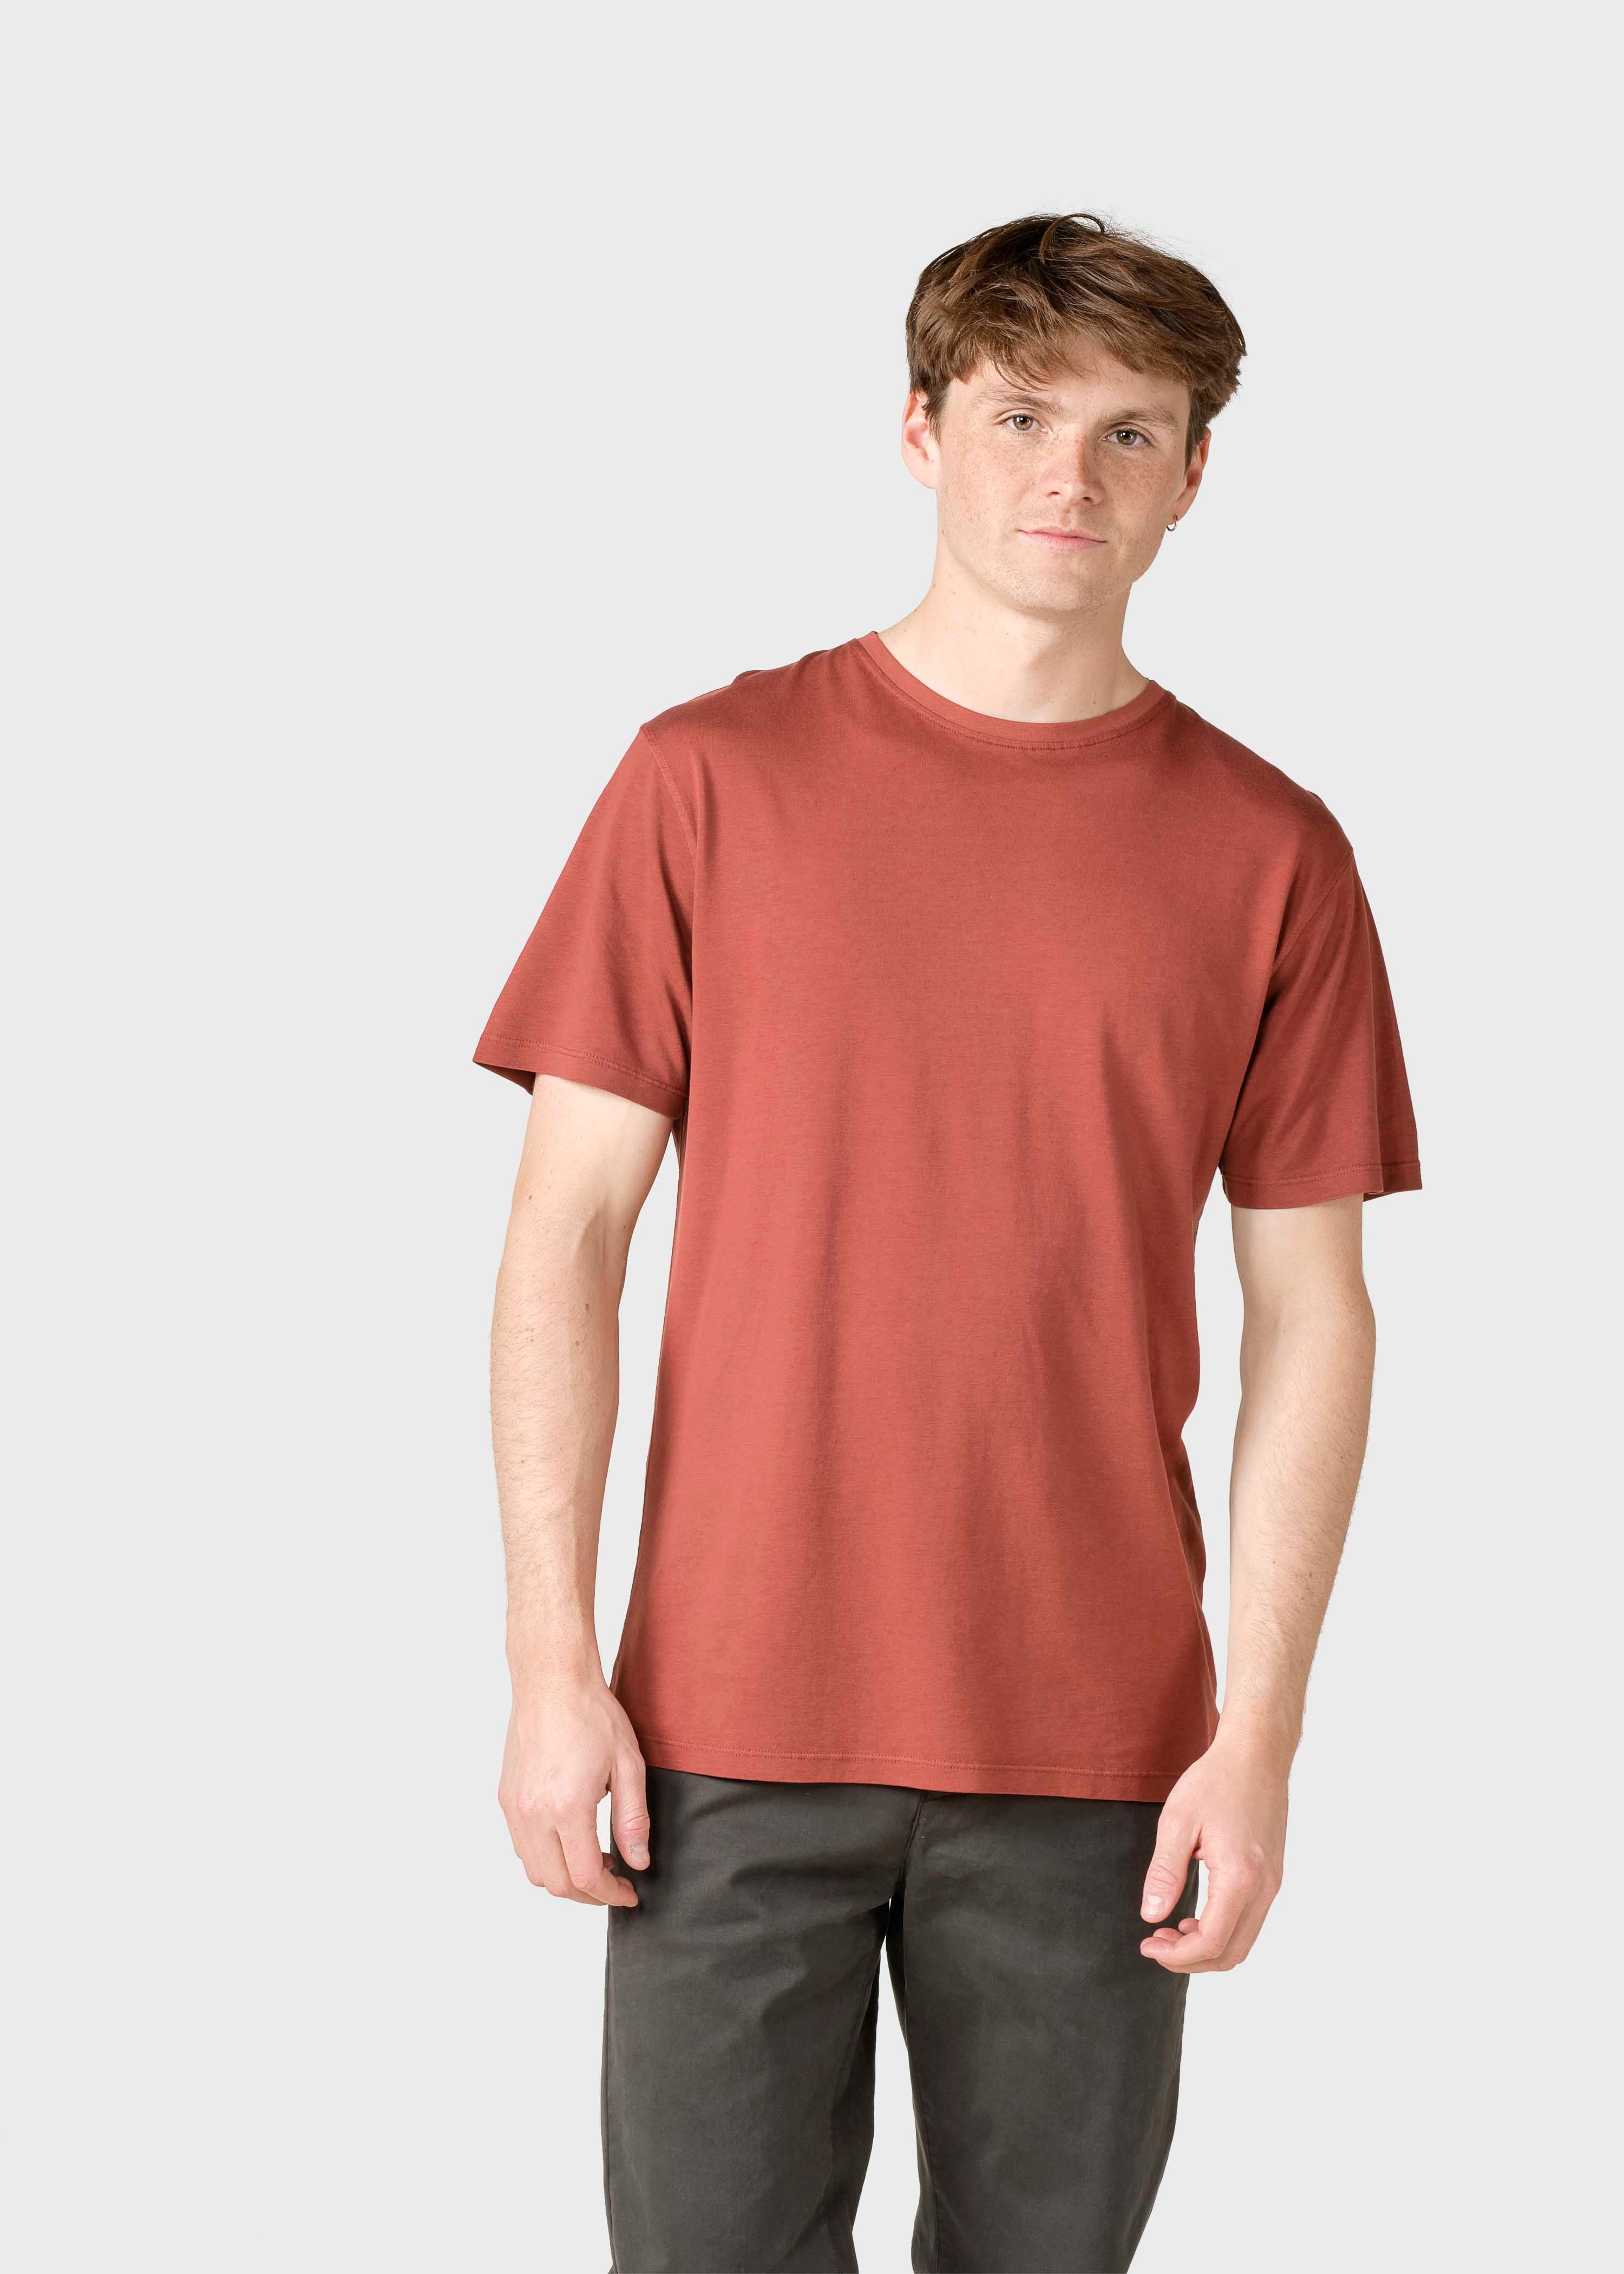 Men'sT-shirt Rufus Ocher